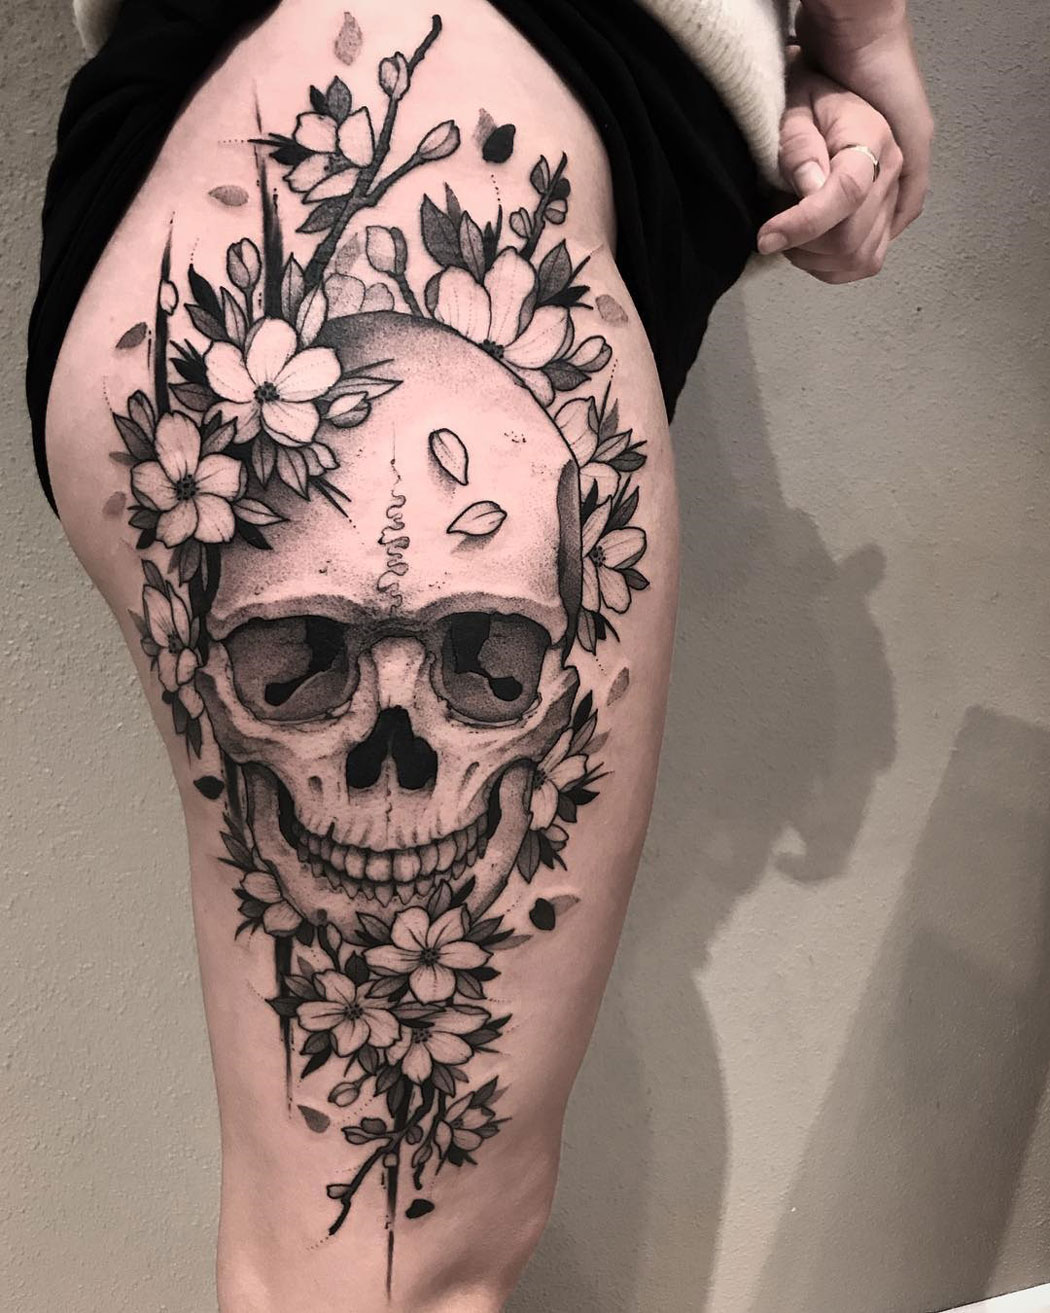 Skull & Flowers on girl's thigh